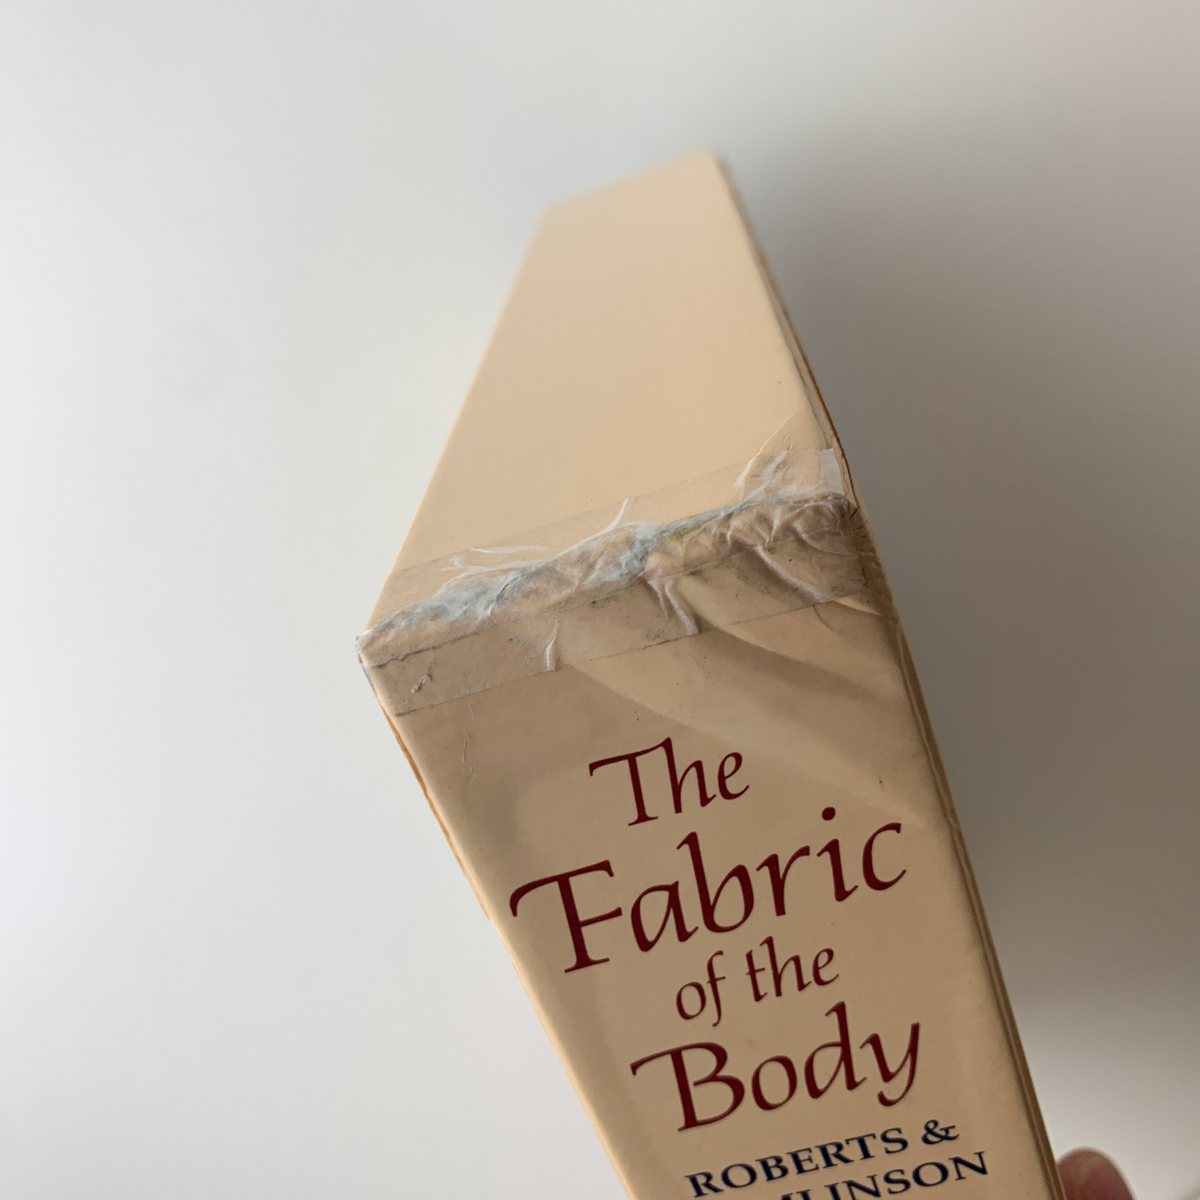 高質 European Body: the of Fabric The Traditions Illustration